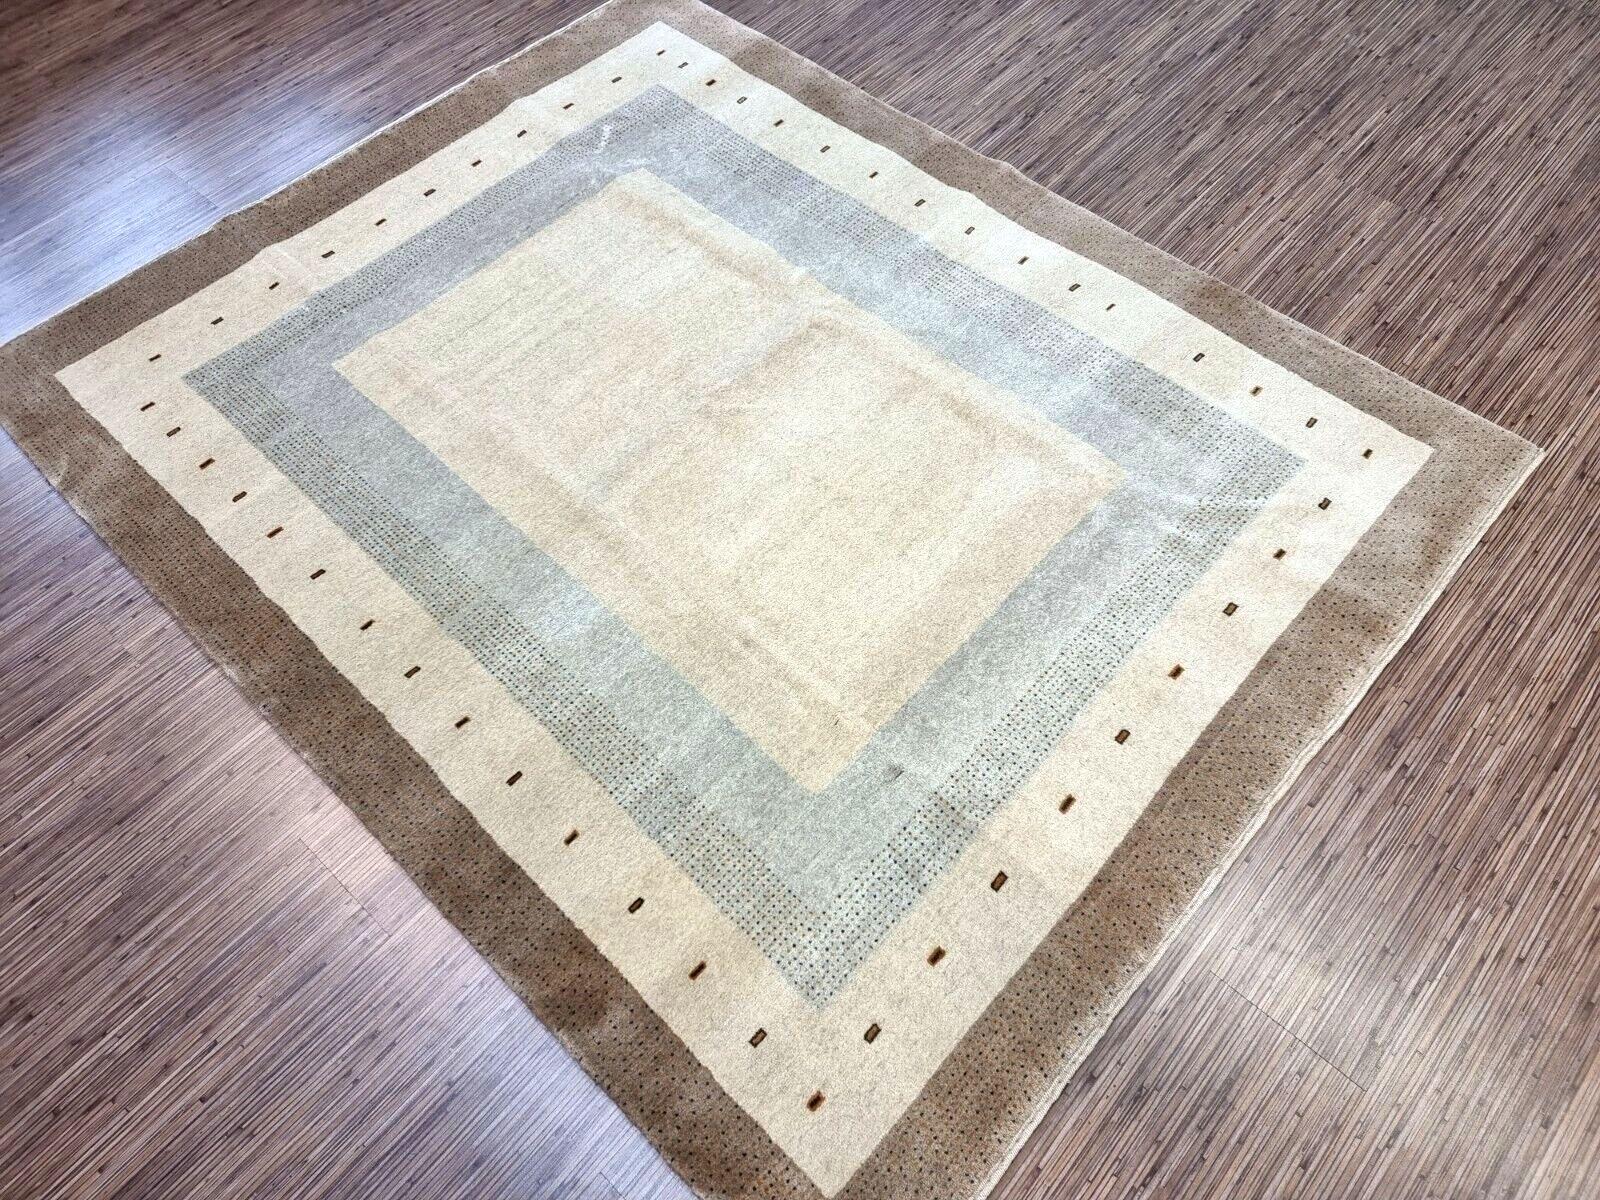 Design/One Patterns:

Dieser Teppich verkörpert die Essenz der traditionellen Gabbeh-Teppiche, die für ihren dichten Flor und ihre erdige Farbpalette bekannt sind.
Die Grundfarbe ist ein beruhigendes Beige, das eine neutrale Leinwand